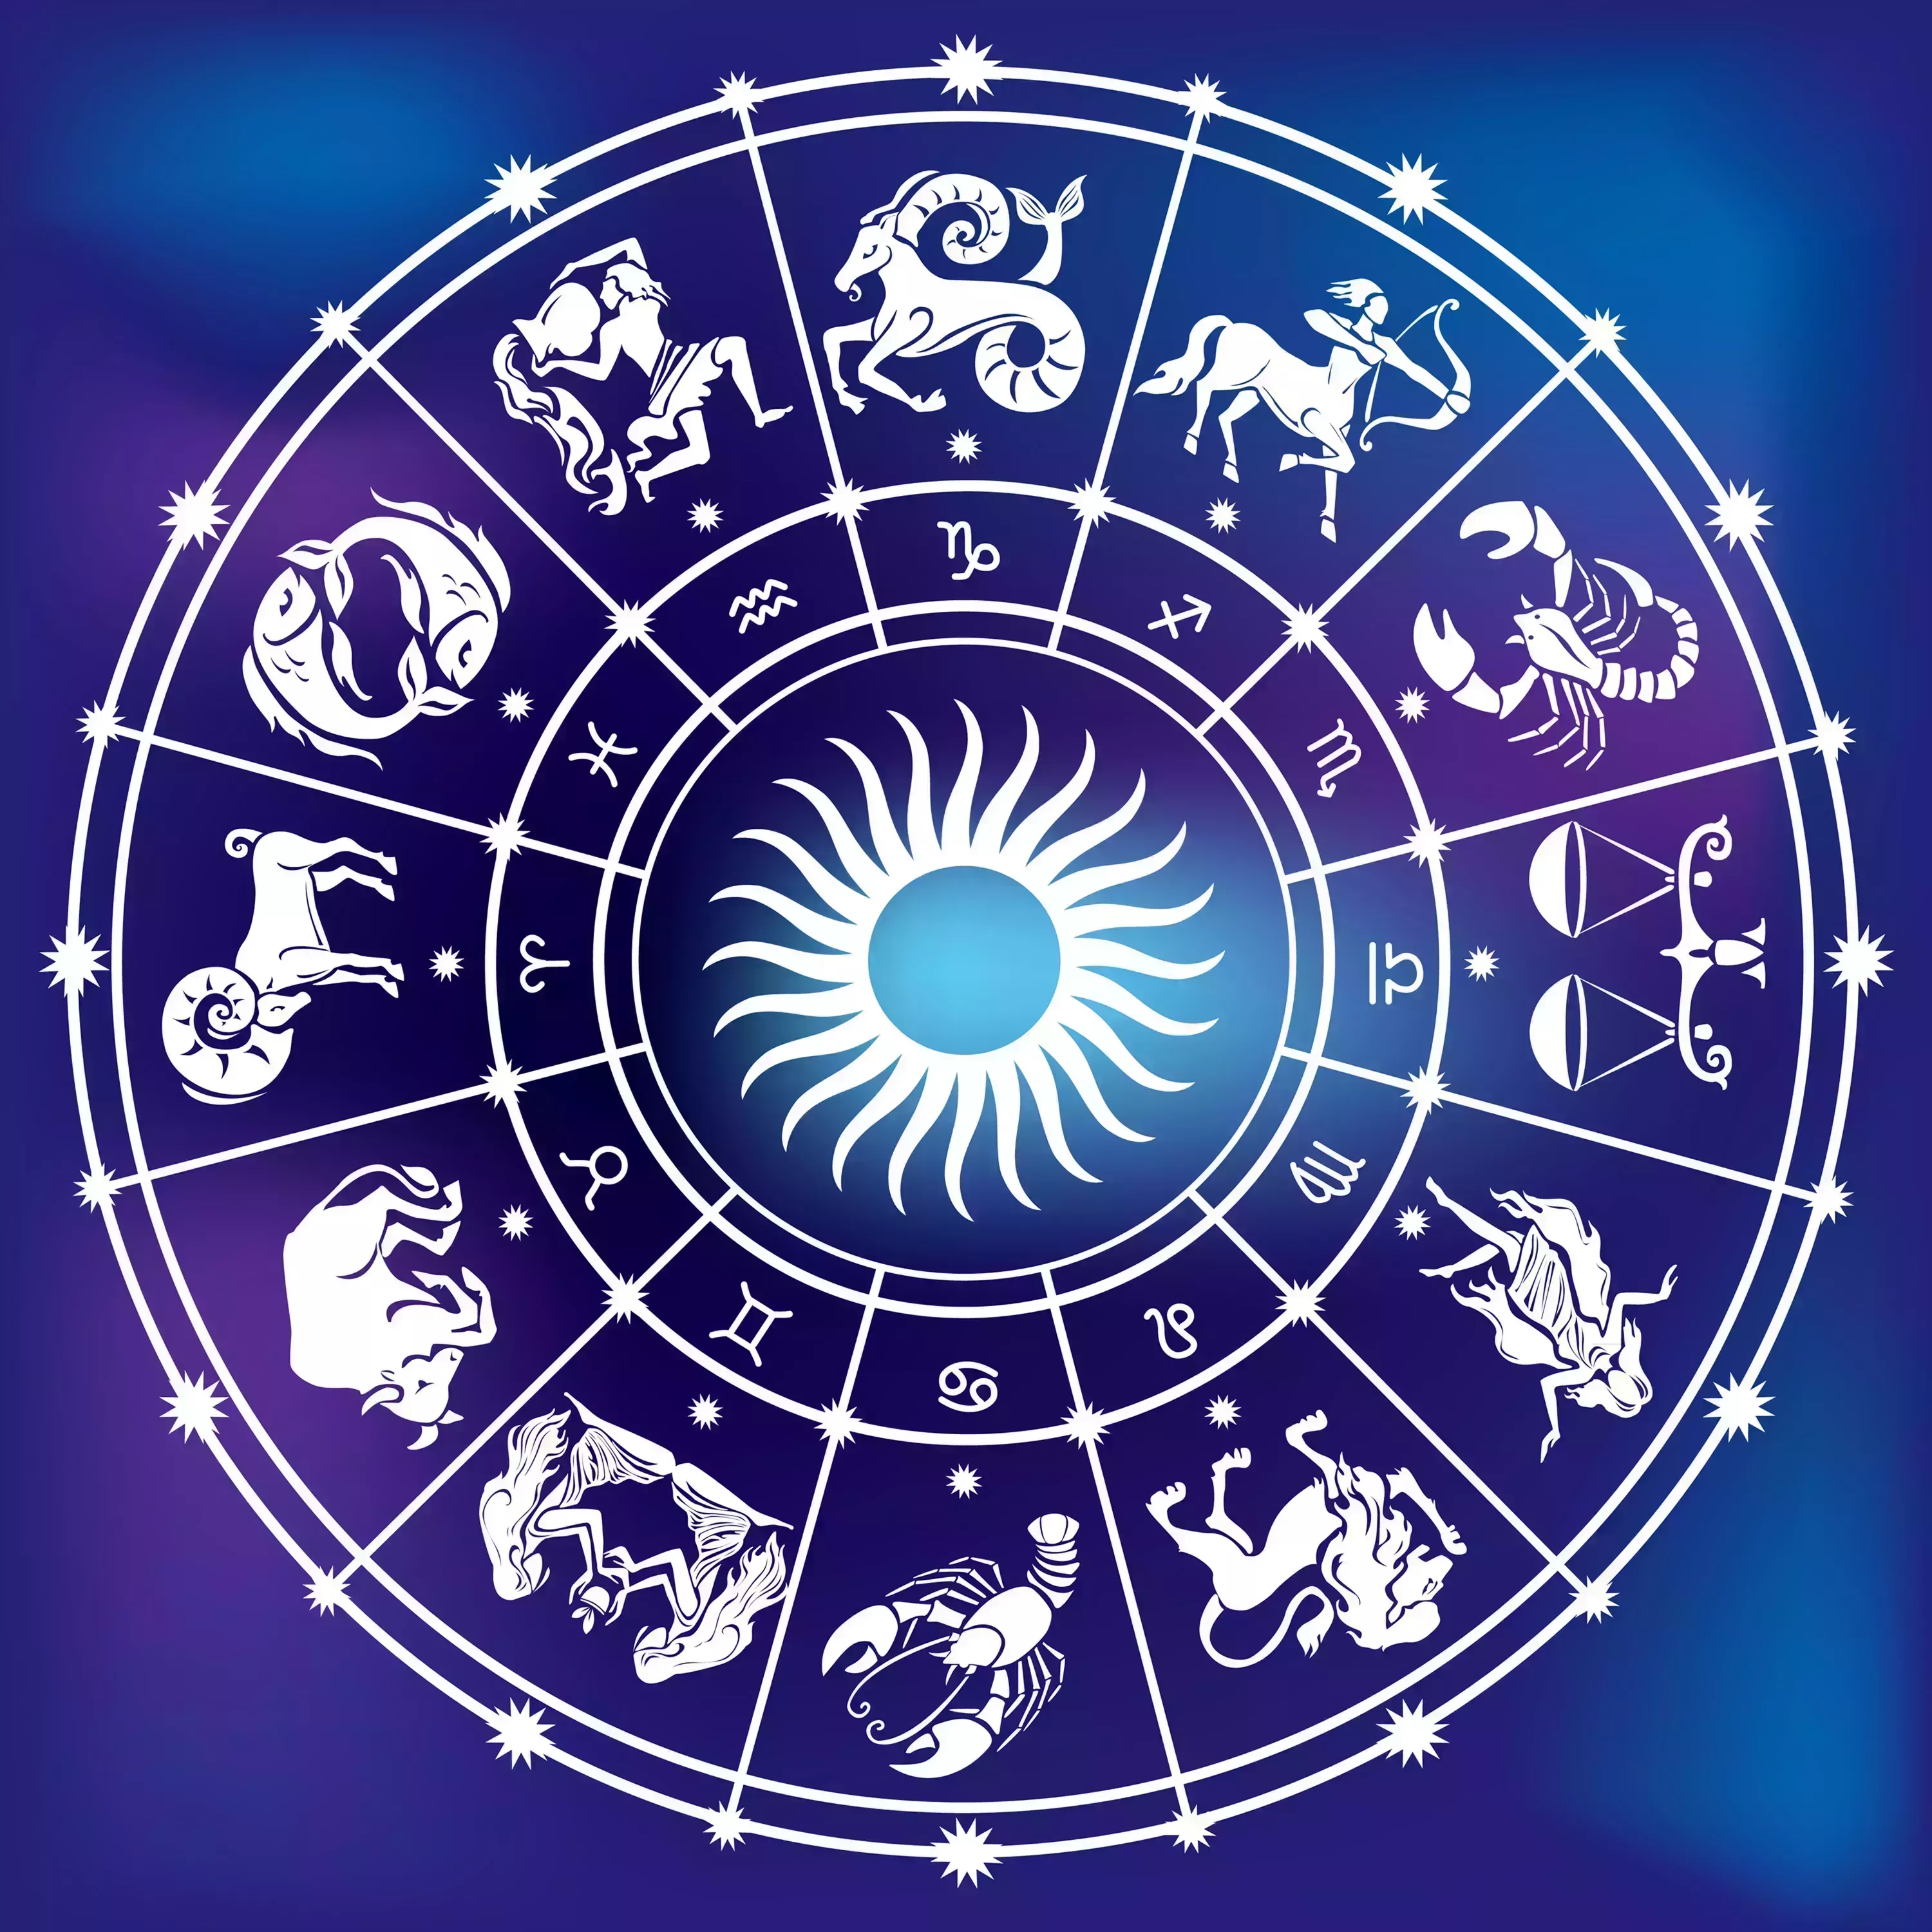 Descubre tu Destino Estelar: Los Signos del Zodíaco y el Horóscopo